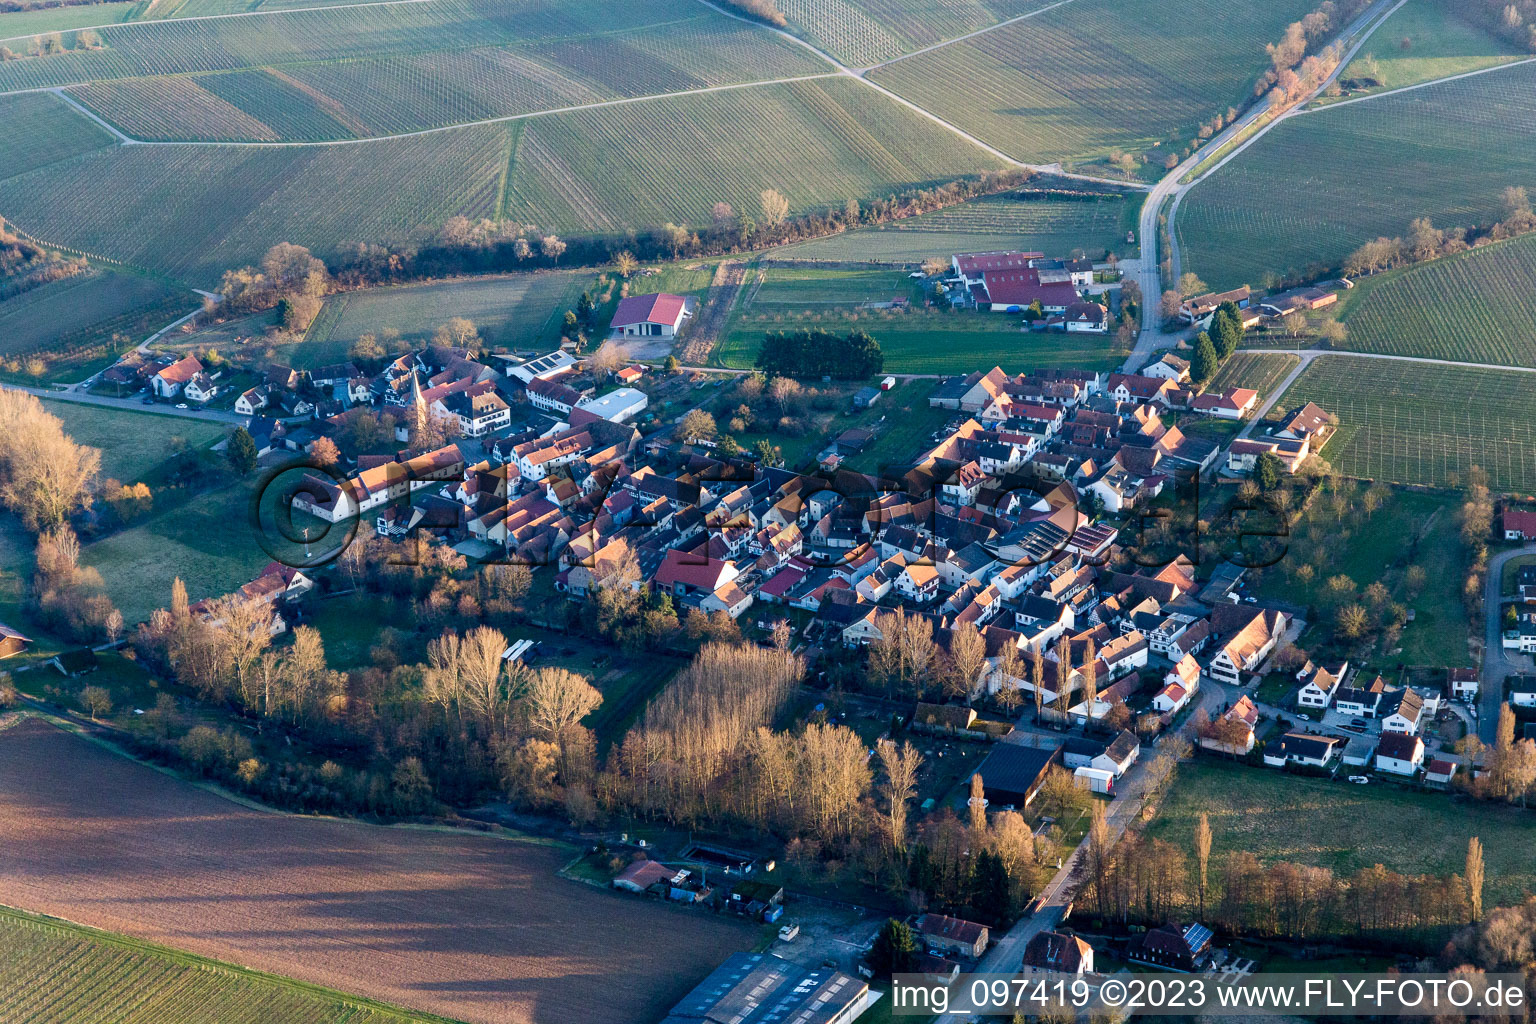 District Heuchelheim in Heuchelheim-Klingen in the state Rhineland-Palatinate, Germany from above